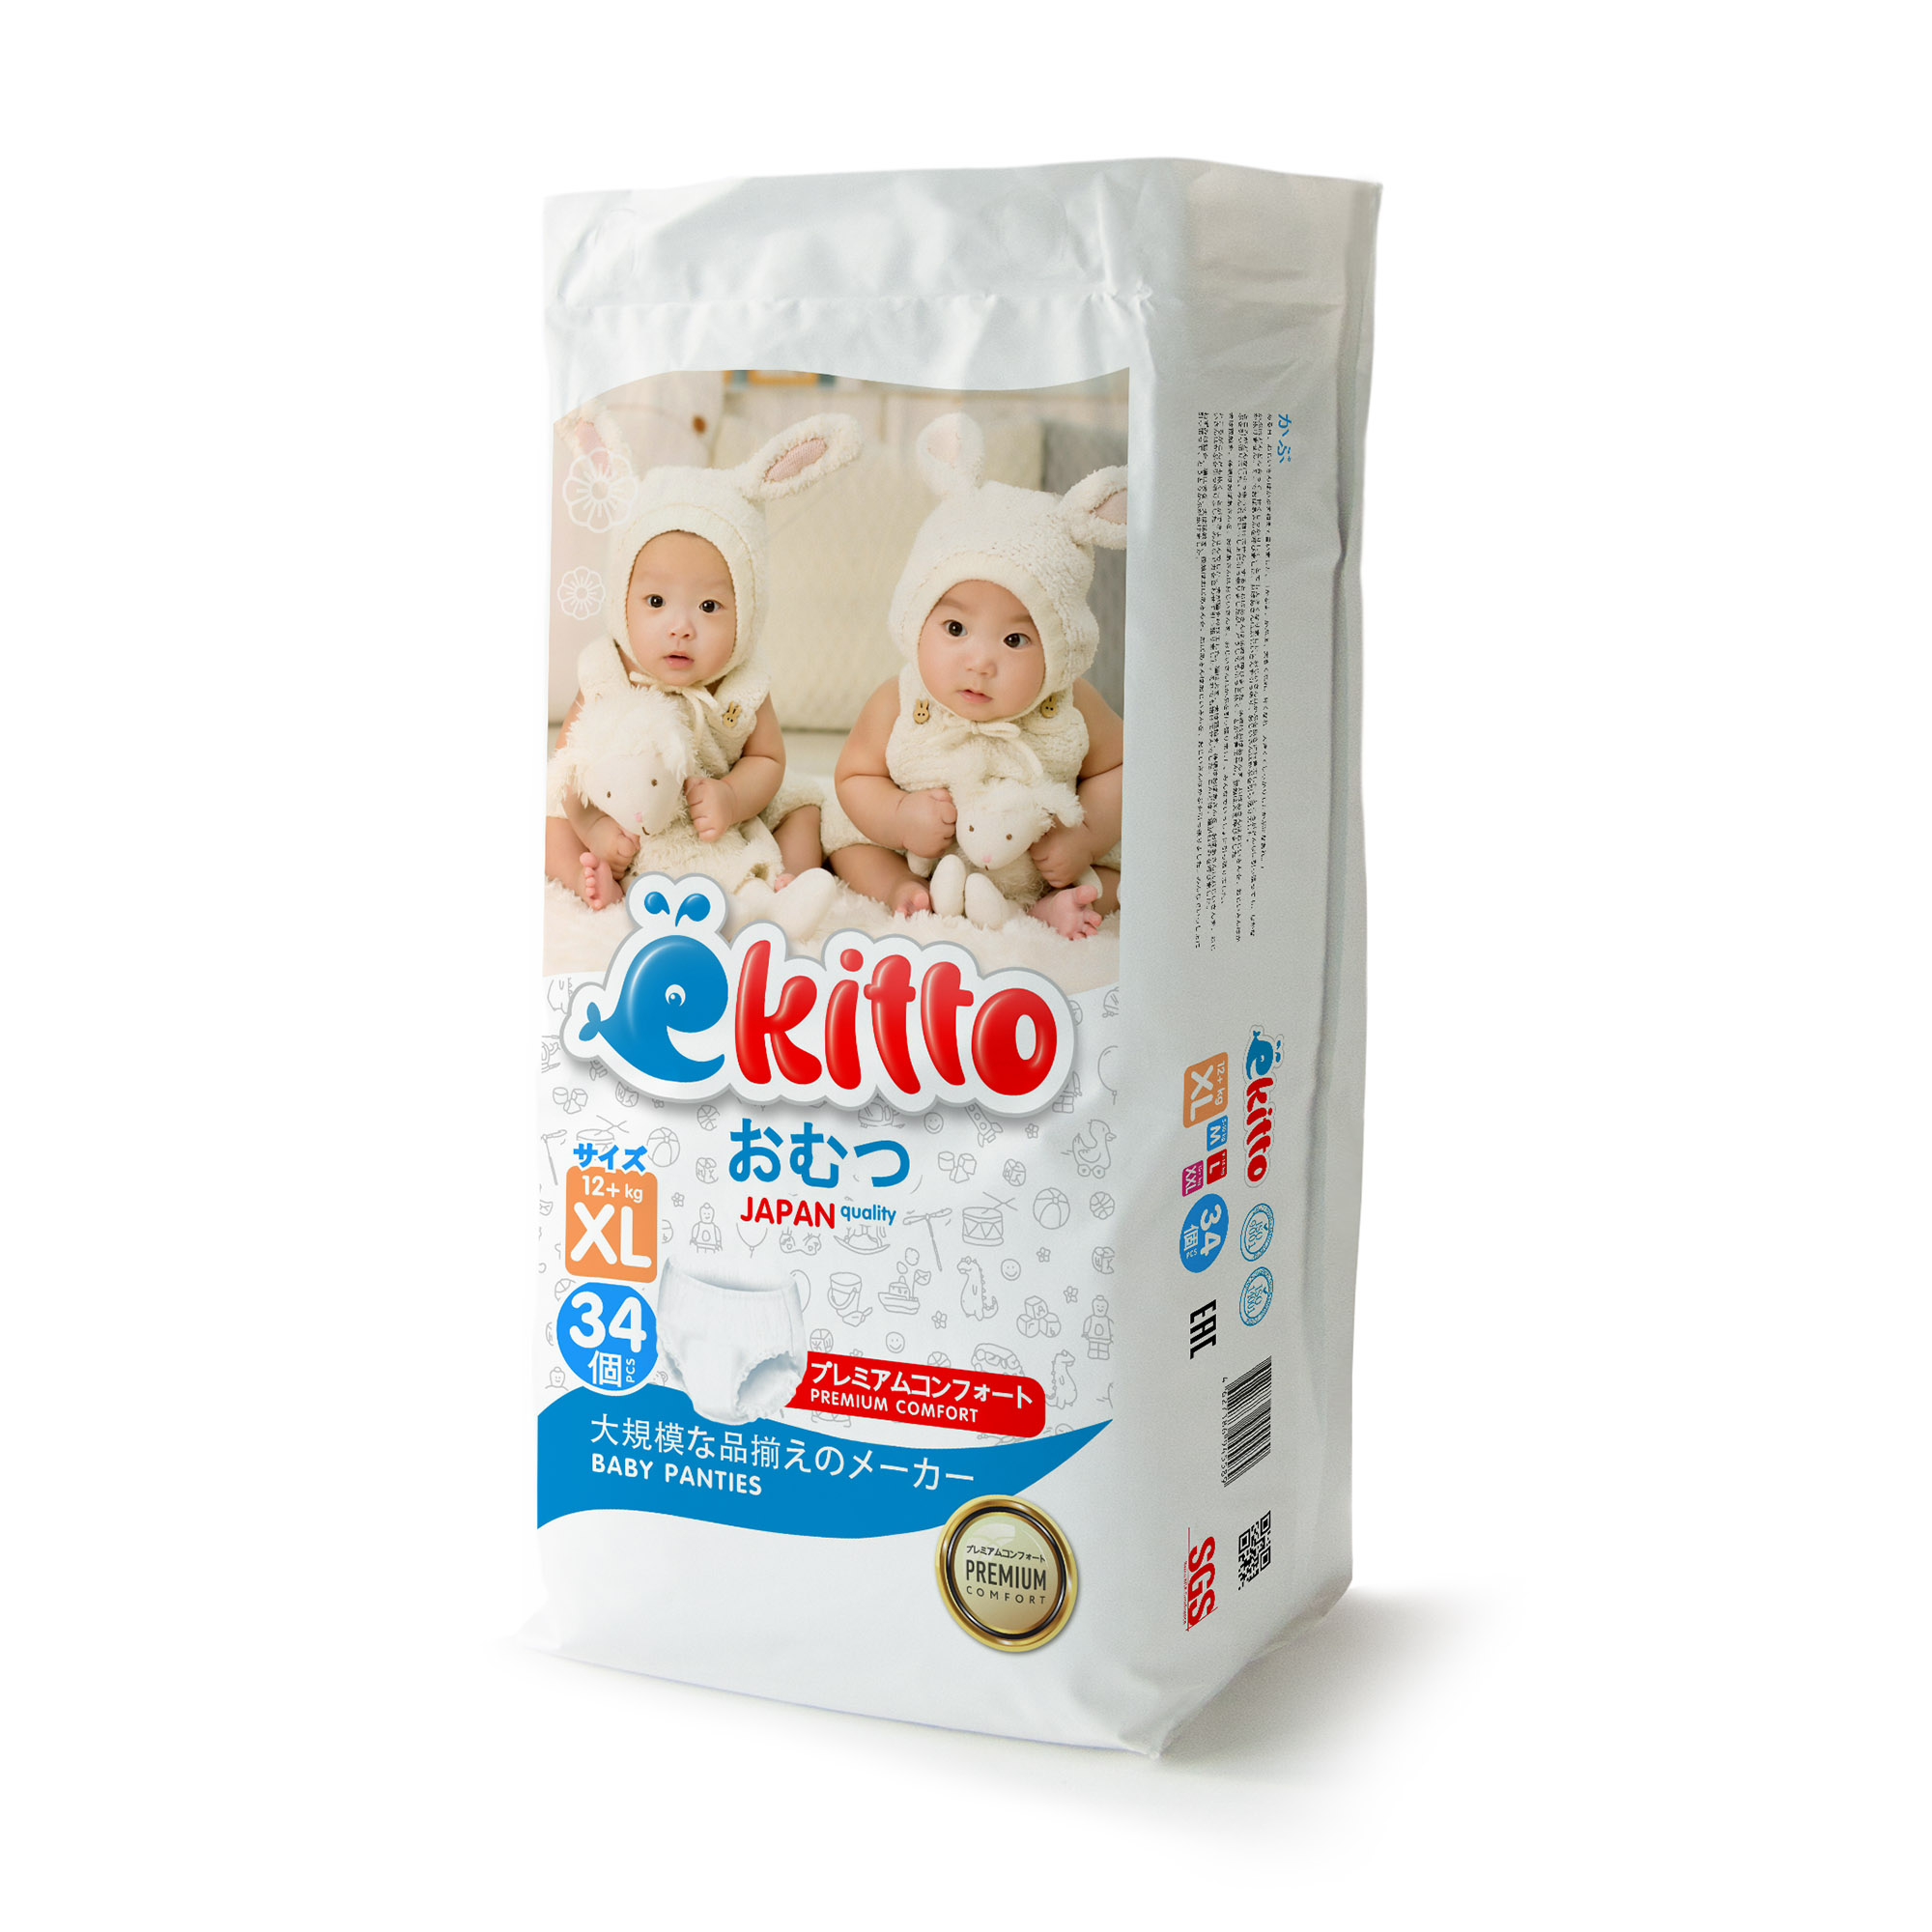 Подгузники-трусики Ekitto 5 размер XL для новорожденных детей от 12-17 кг 34 шт - фото 10